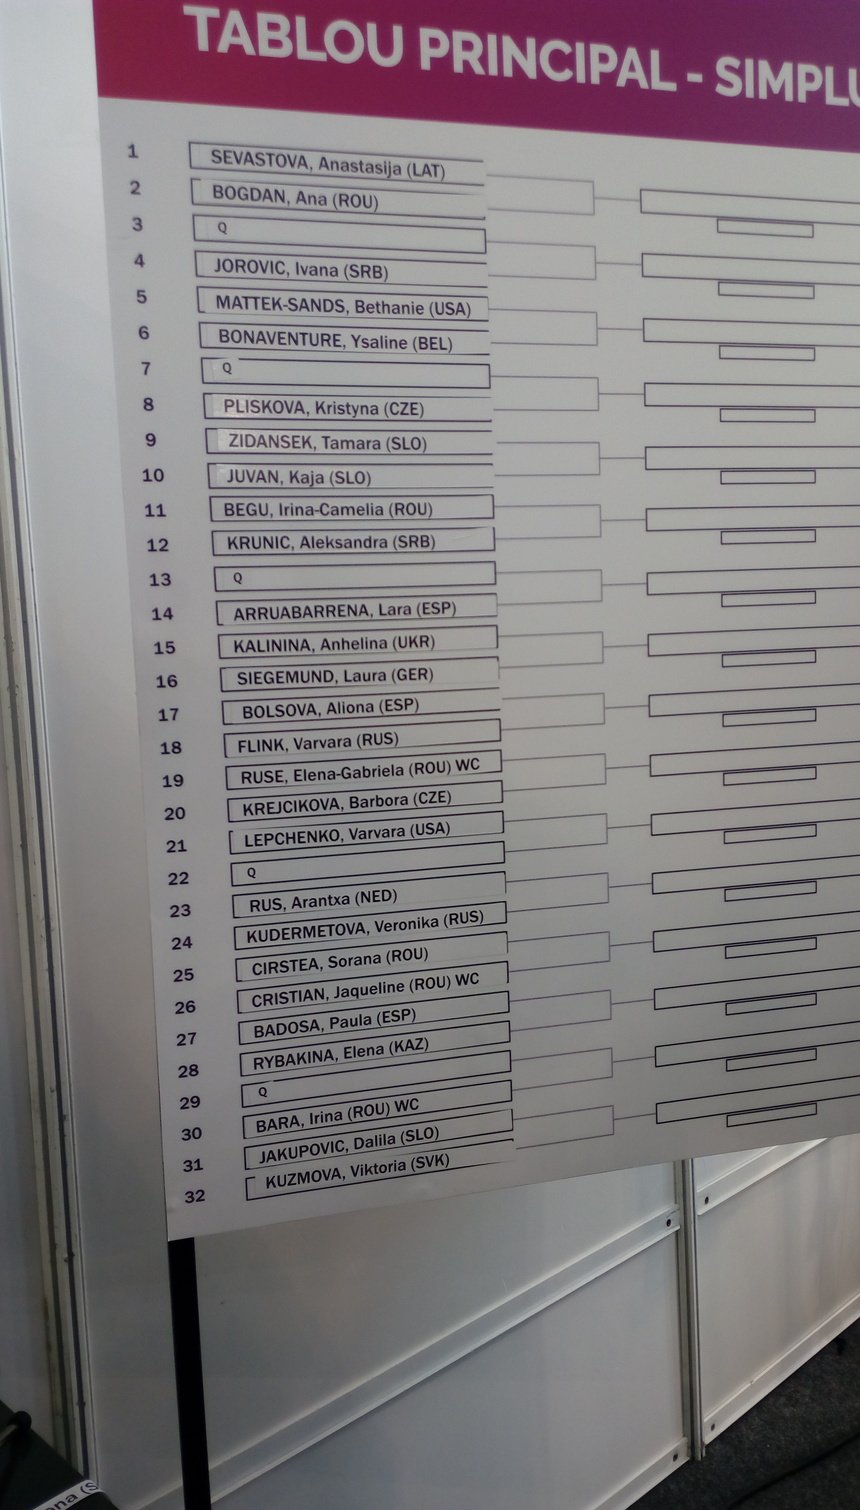 Ana Bogdan va juca împotriva principalei favorite, Anastasija Sevastova, în primul tur la BRD Bucharest Open